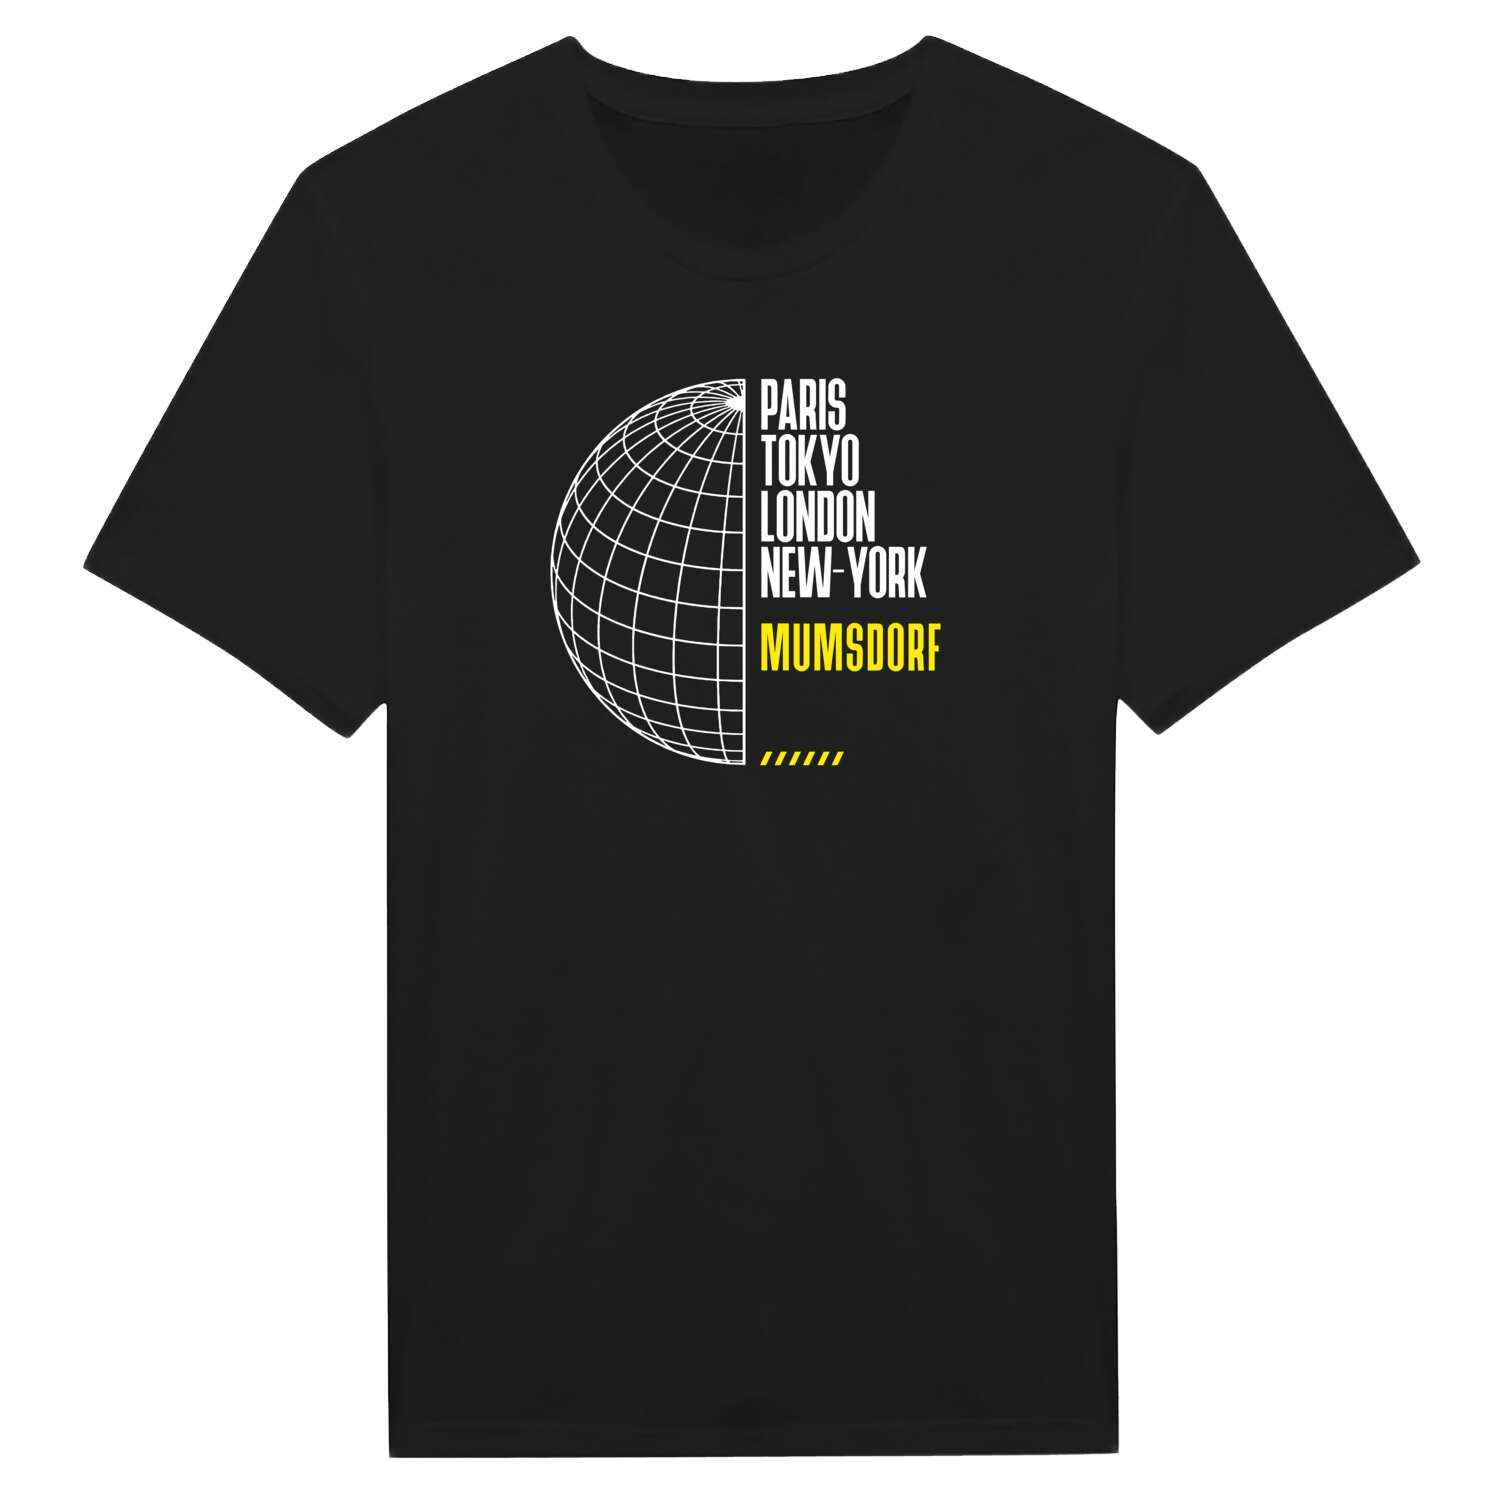 Mumsdorf T-Shirt »Paris Tokyo London«